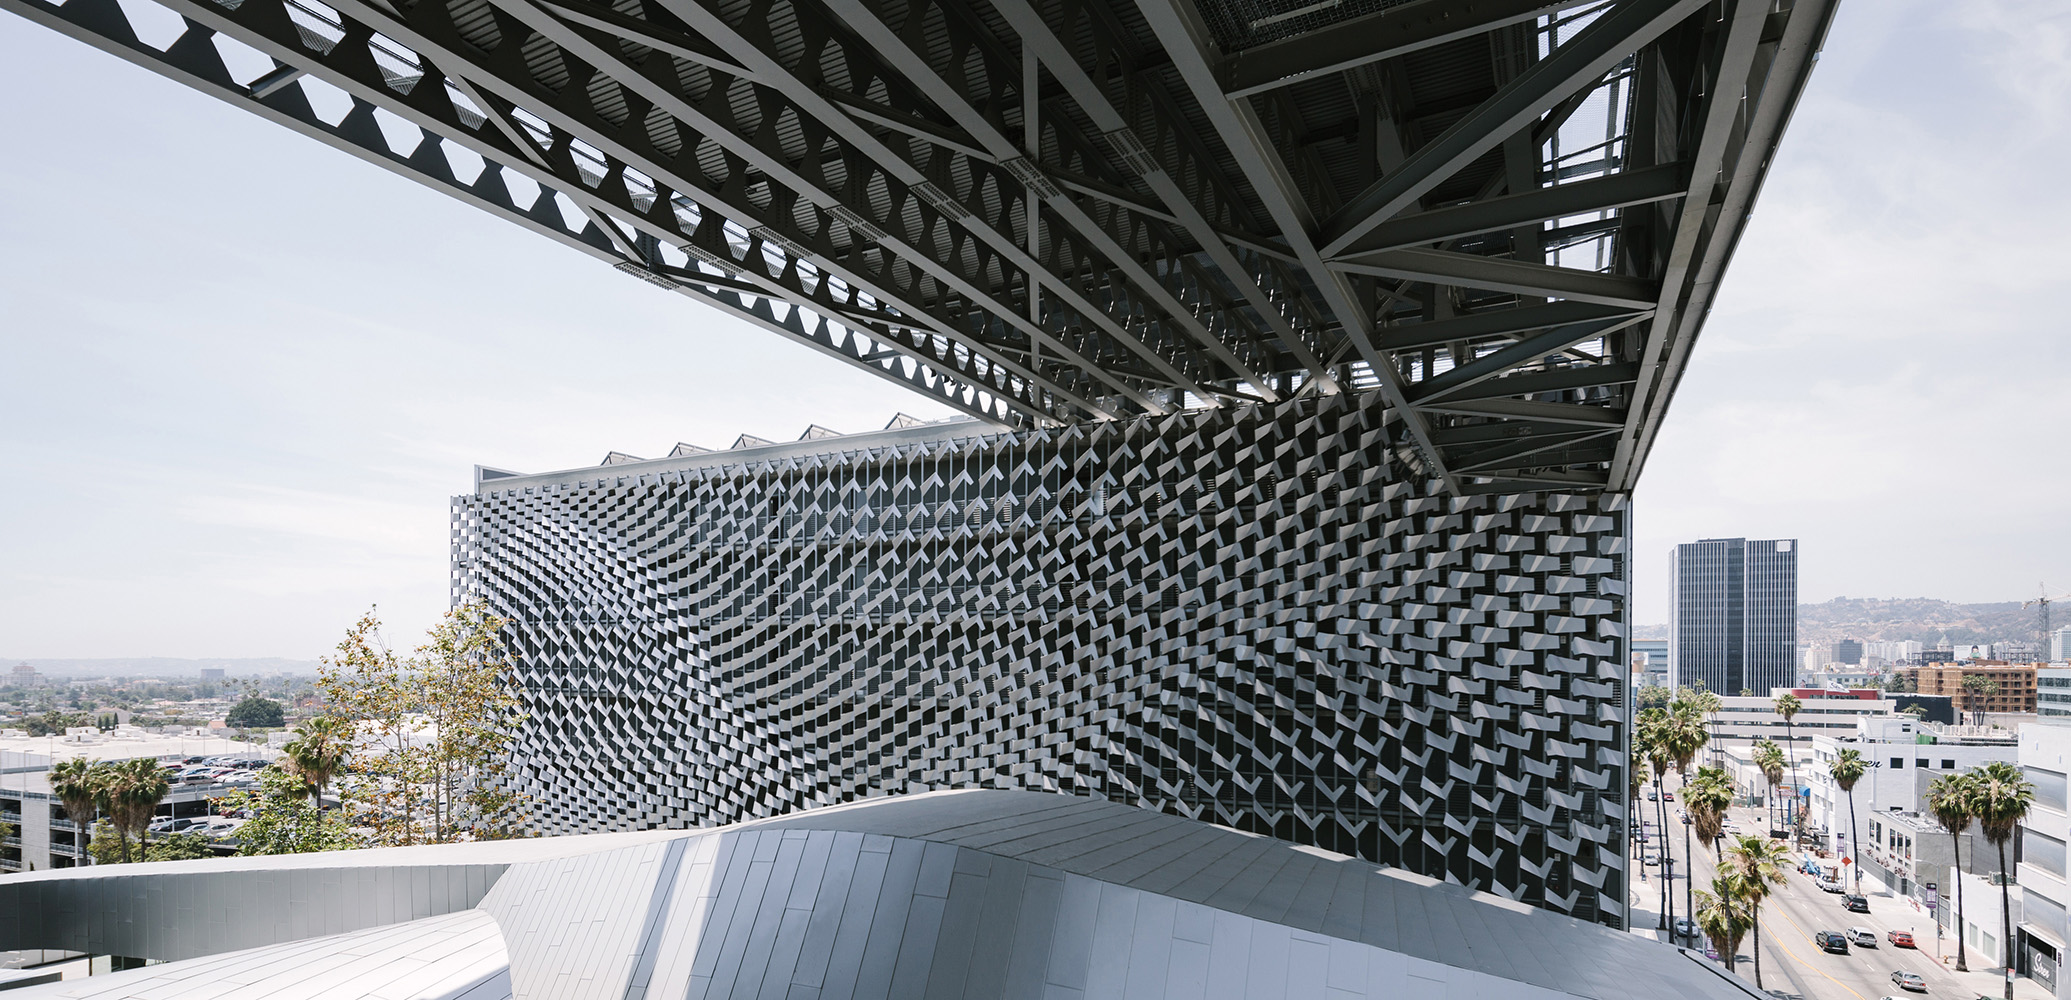 Folded aluminum facade panels. Photo by Taiyo Watanabe